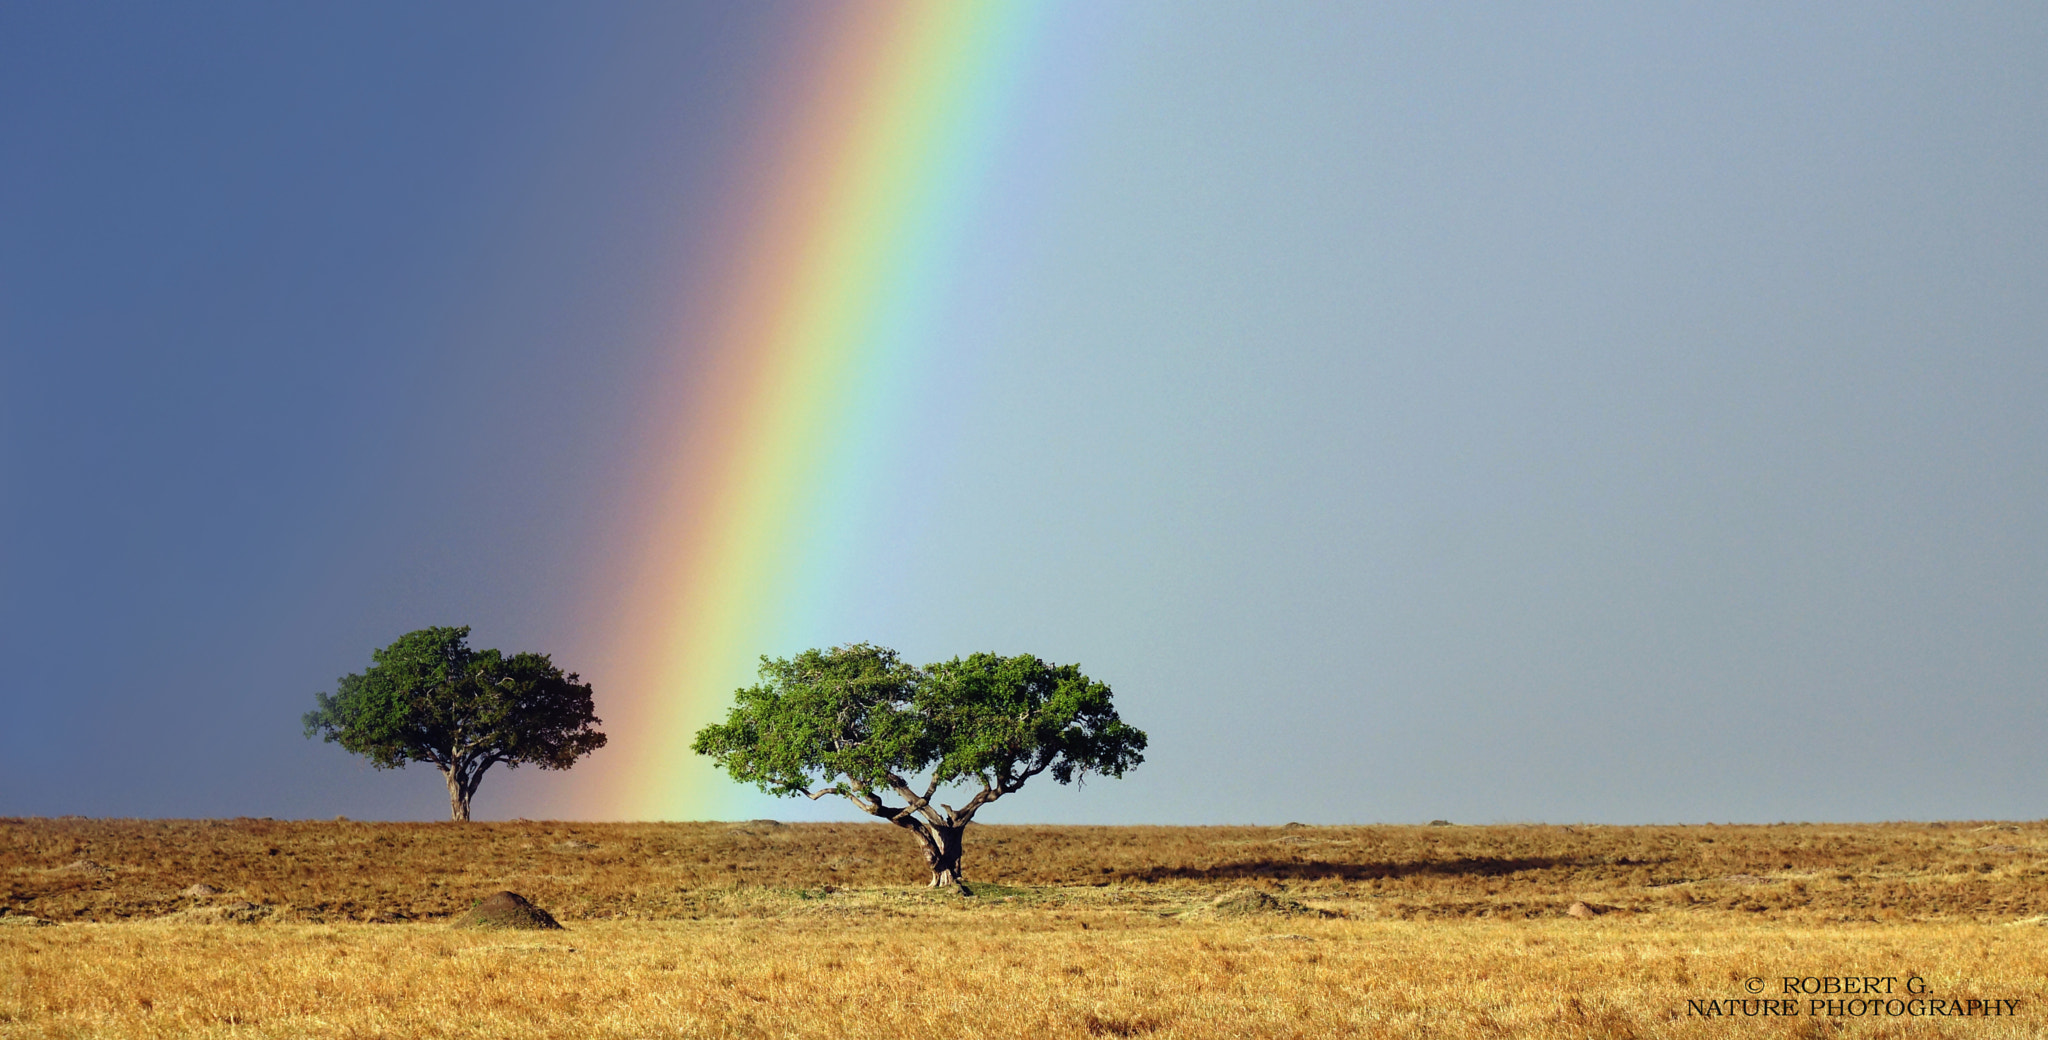 Sony SLT-A77 sample photo. Rainbow over masai mara 2016 photography